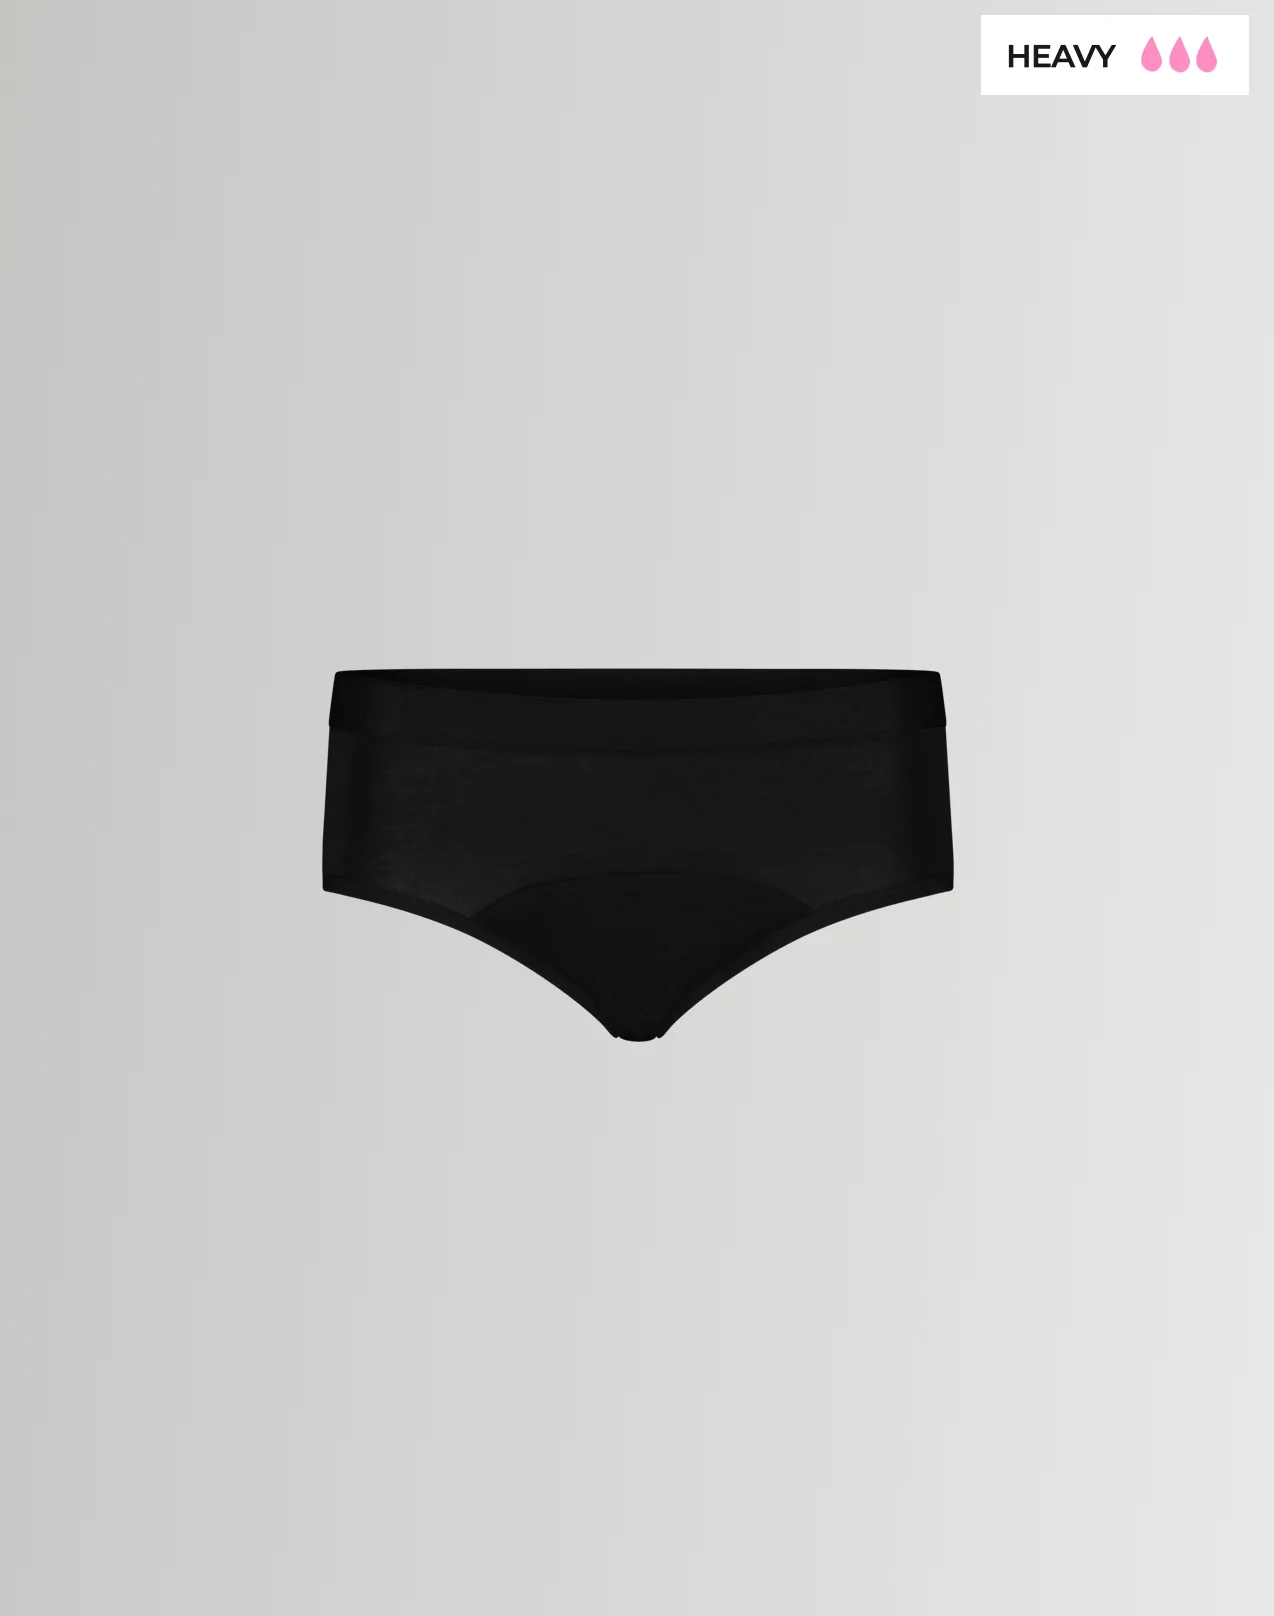 Unders By Proof Period Underwear Briefs - Light Absorbency - Black